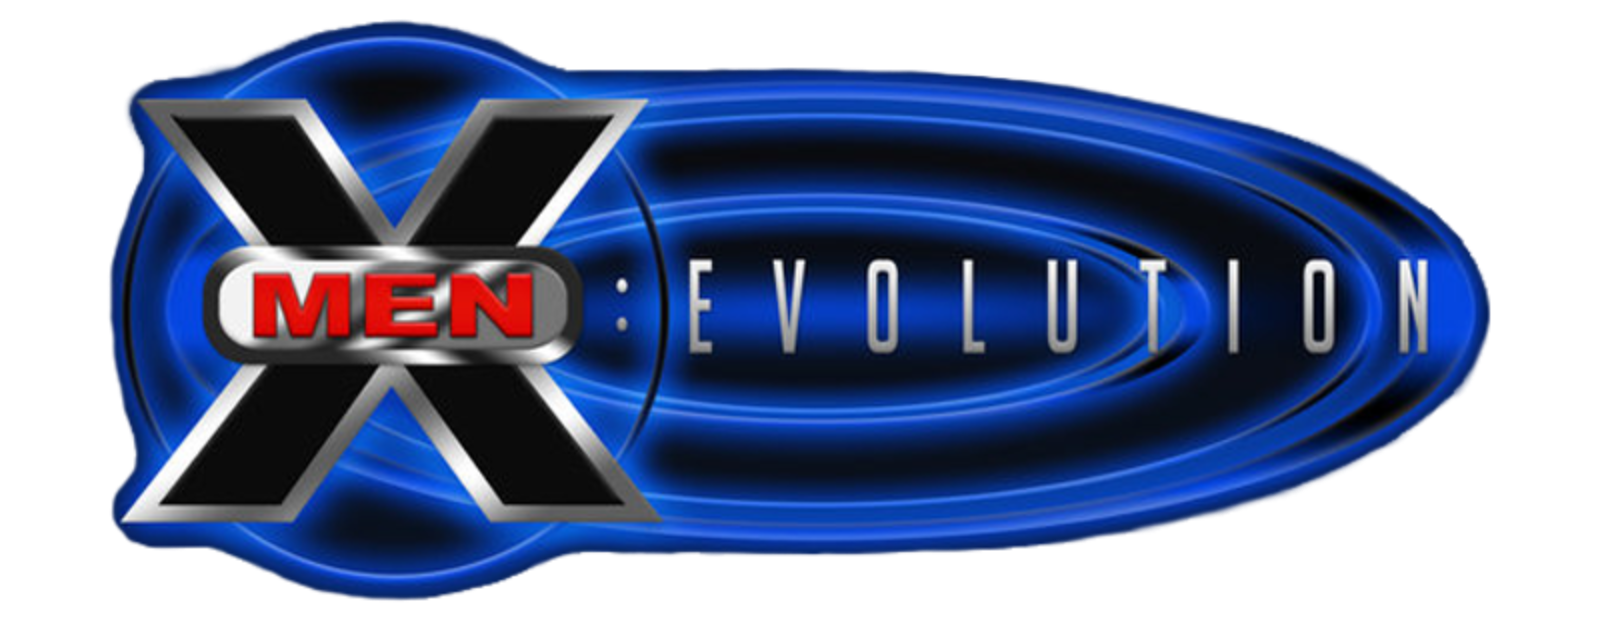 X-Men: Evolution (5 DVDs Box Set)